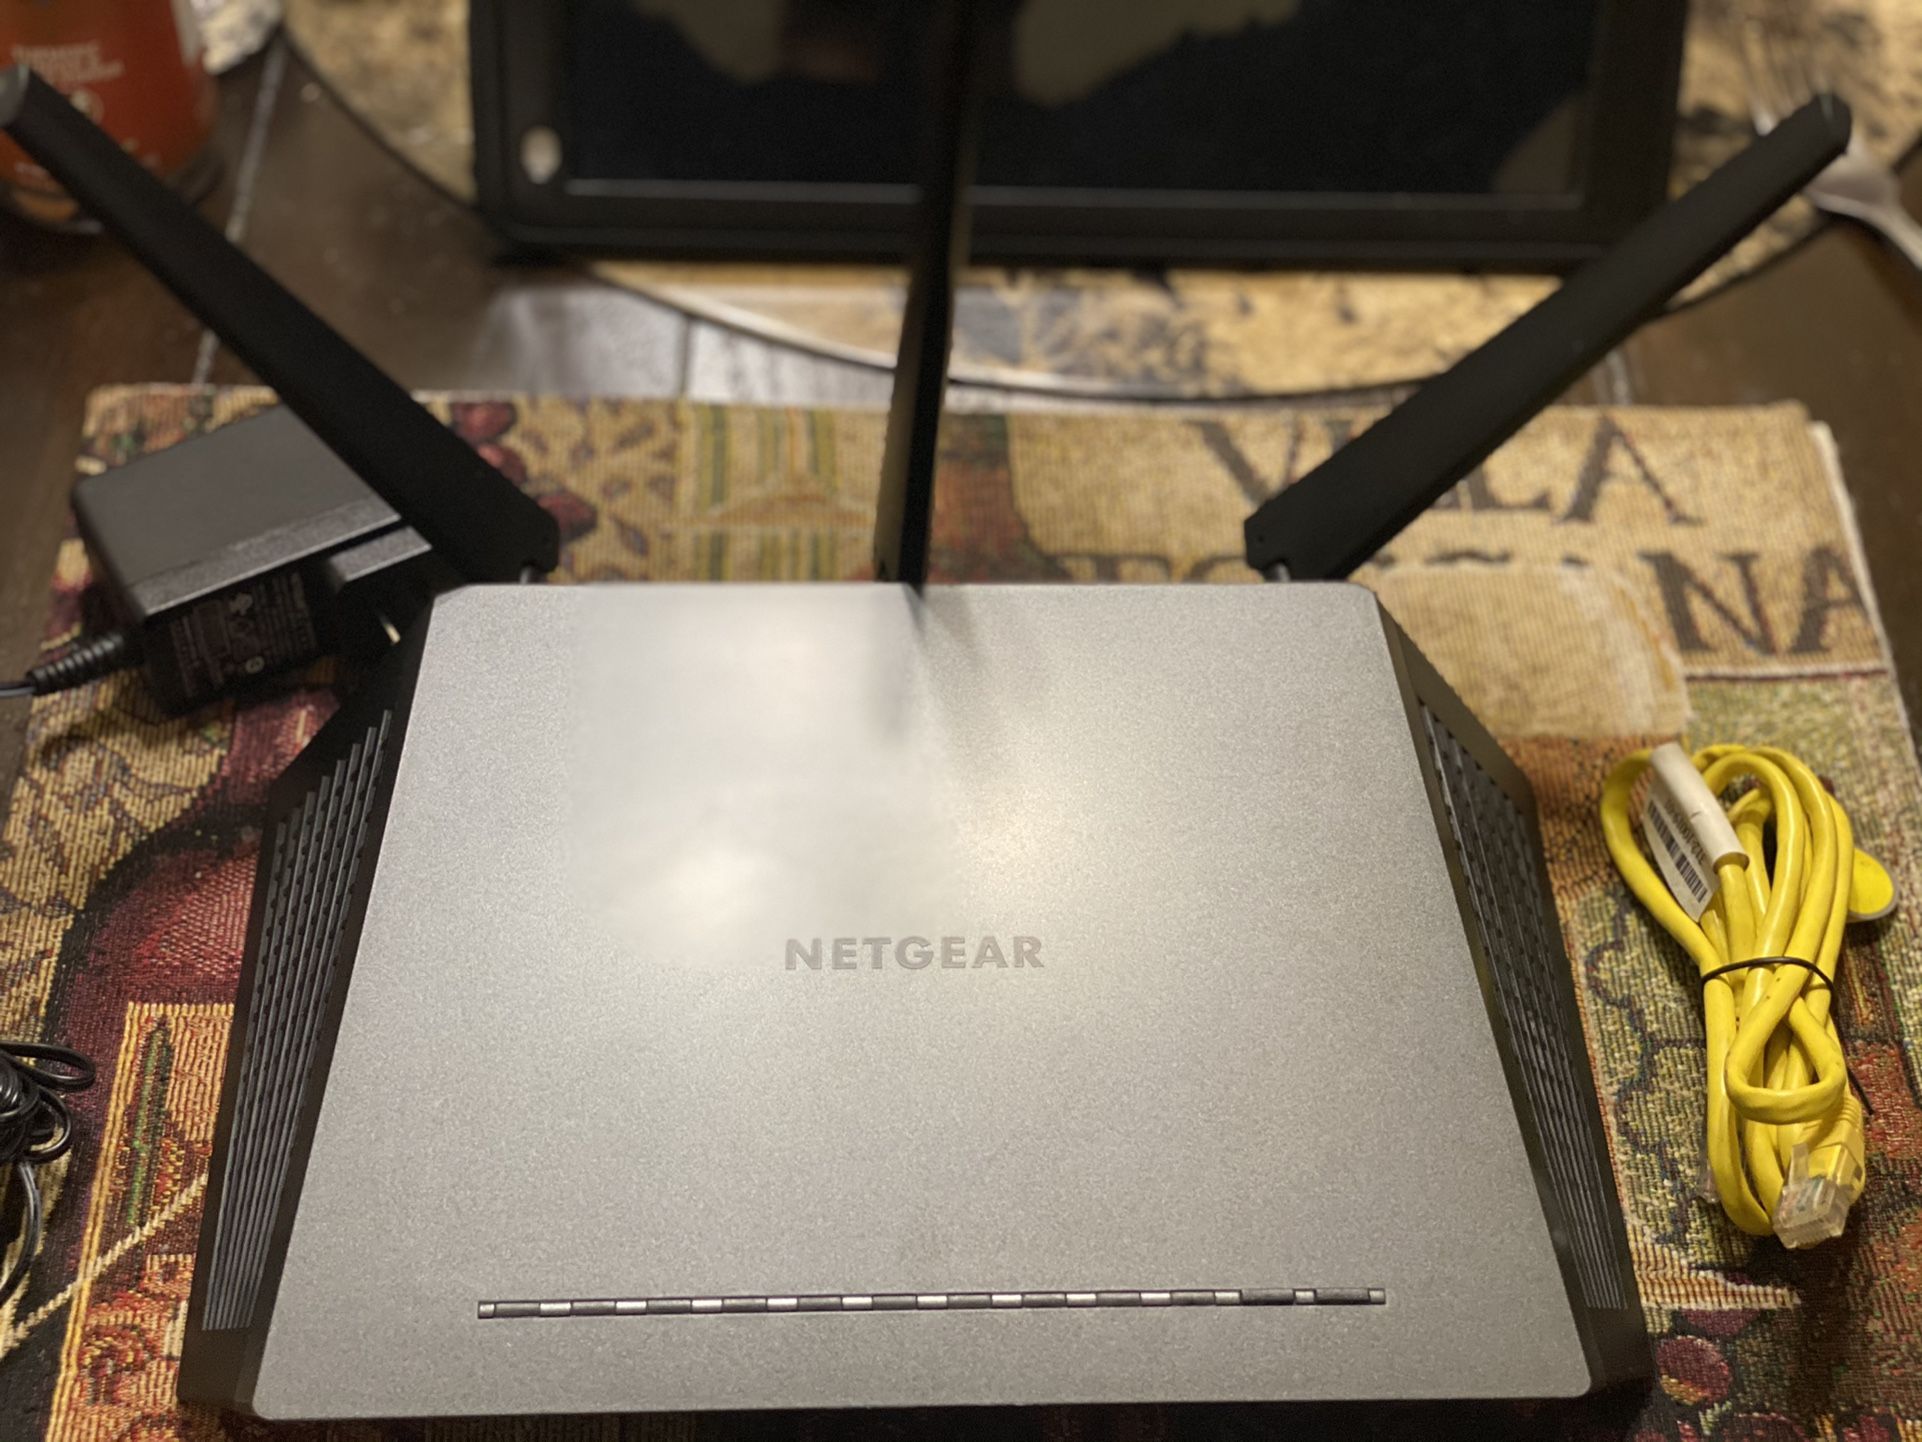 NETGEAR Nighthawk AC1750 Smart WiFI Router Model: R6700